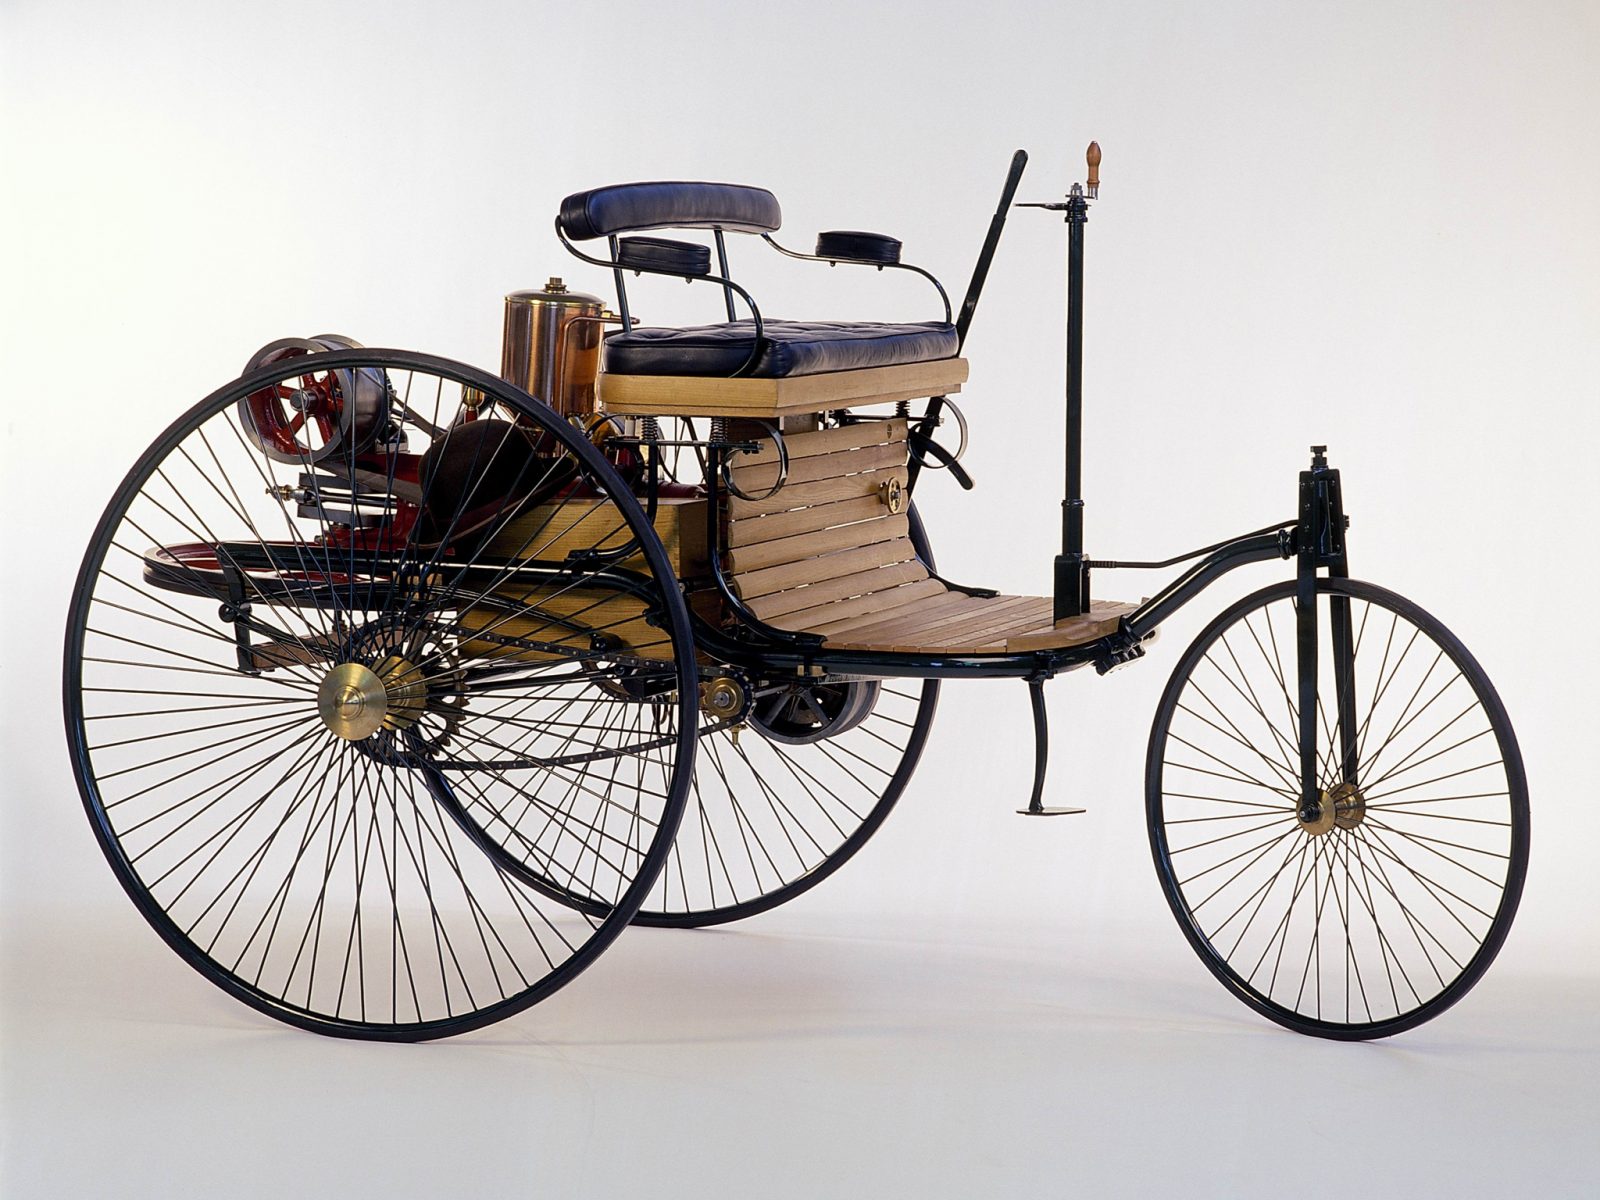 Первые машины на автомате. Benz Patent-Motorwagen 1886. Первый Мерседес Бенц 1886.